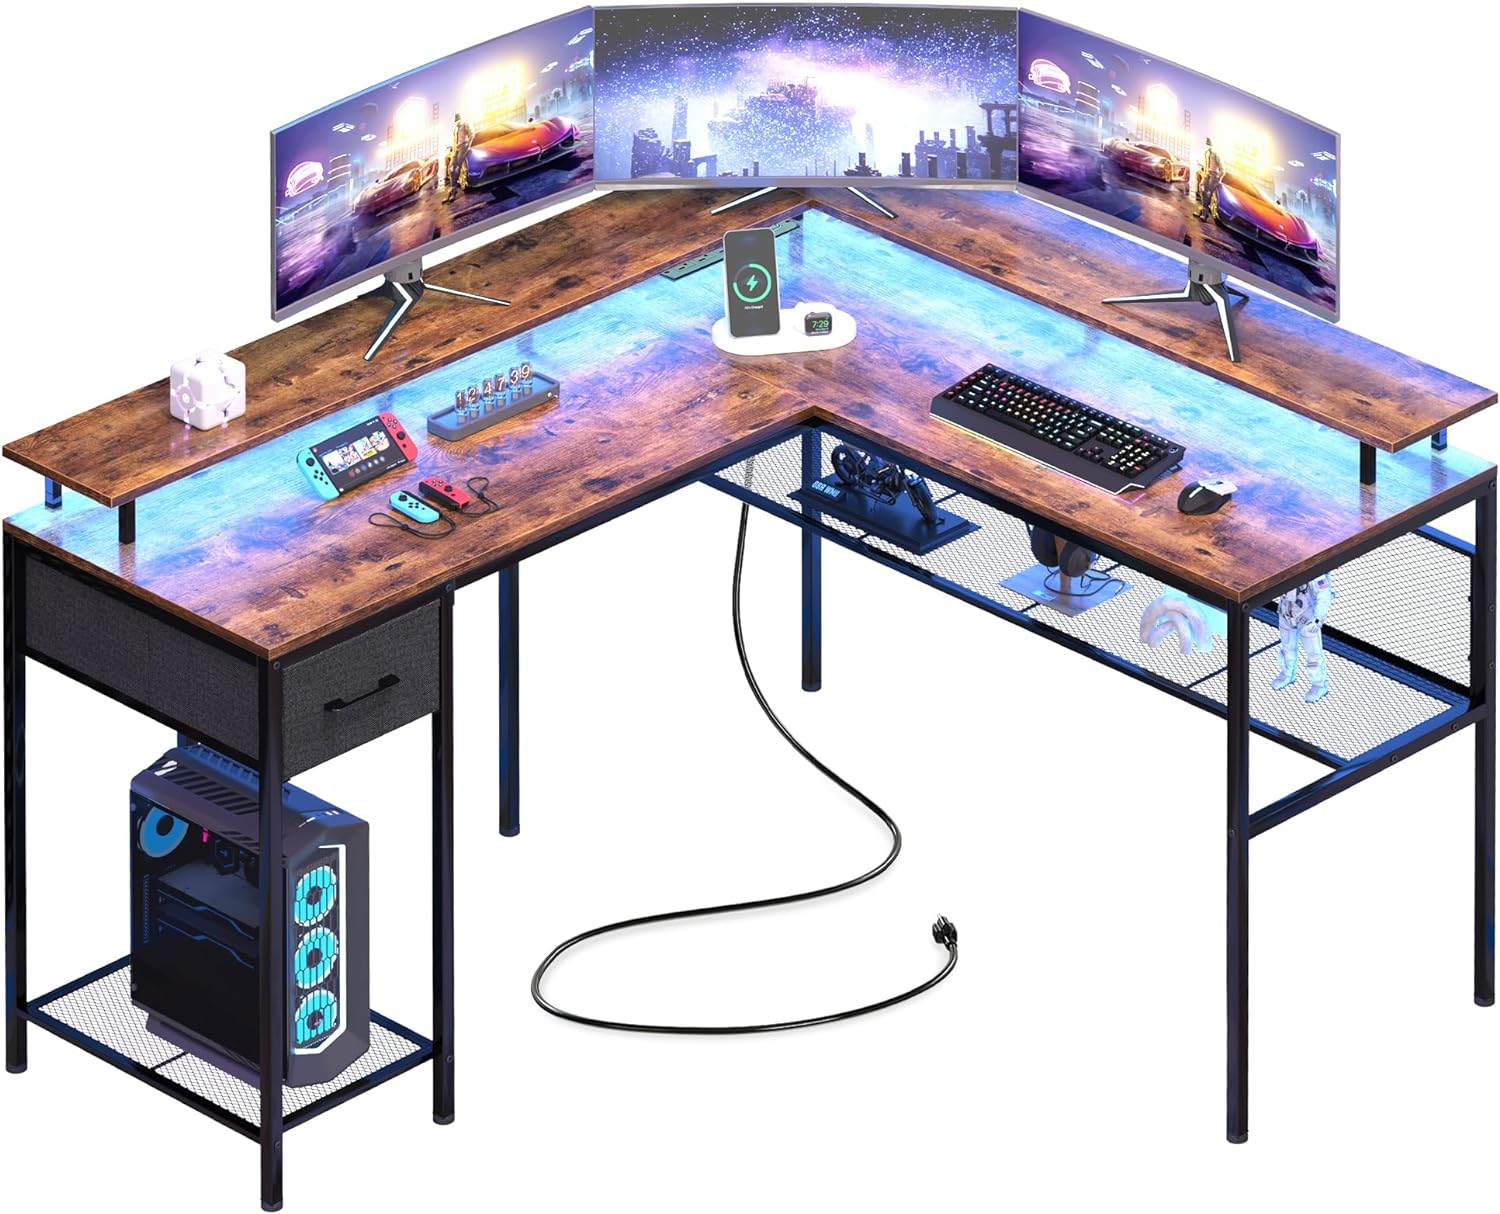 L Shaped Desk Computer Desk with LED Lights & Power Outlets, Gaming Desk with Storage Shelves, Corner Desk Home Office Desk, Rustic Brown